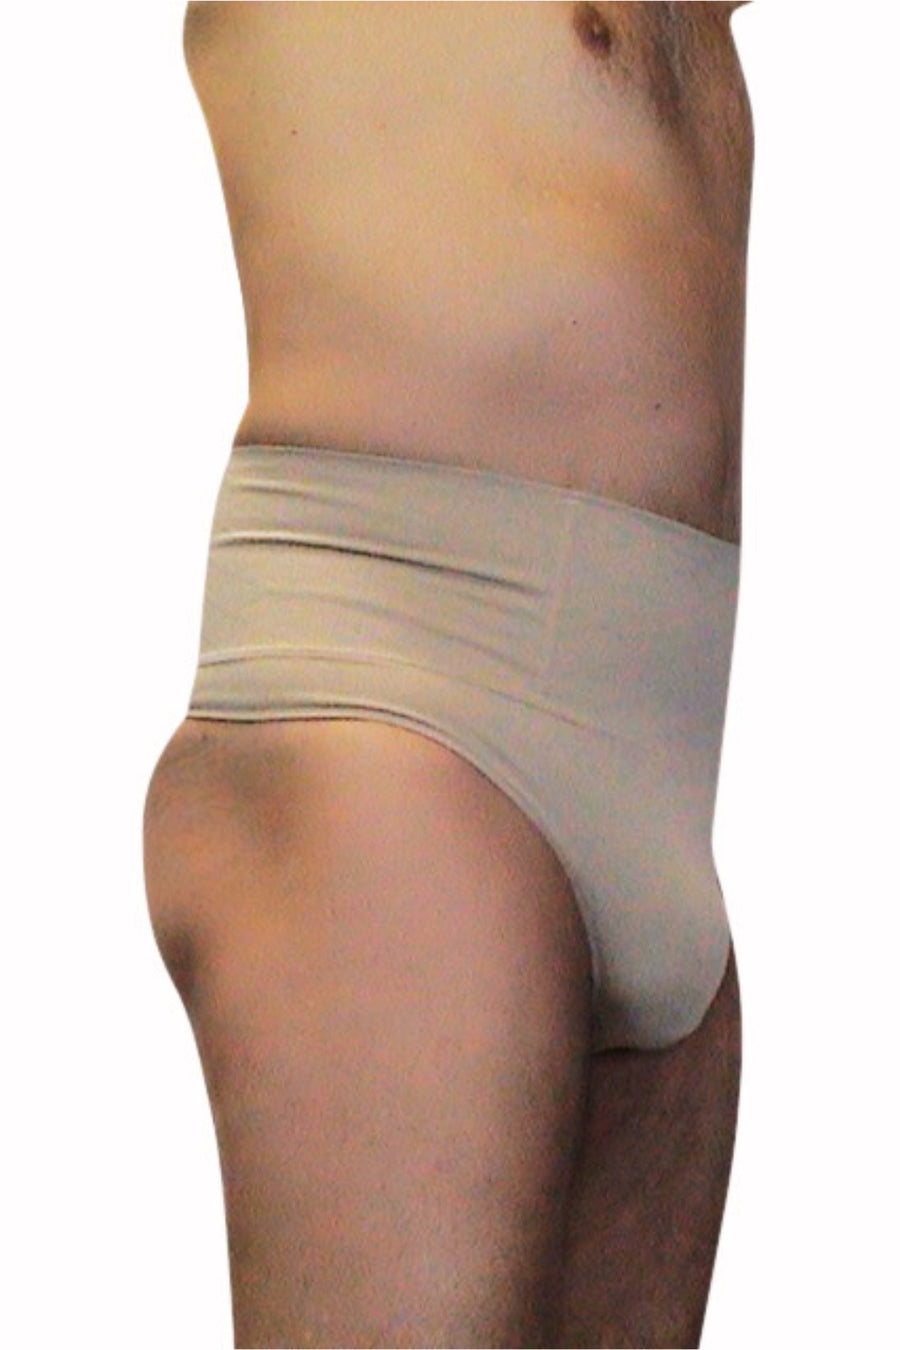 Tummy Control Underwear For Men - Best Price in Singapore - Jan 2024